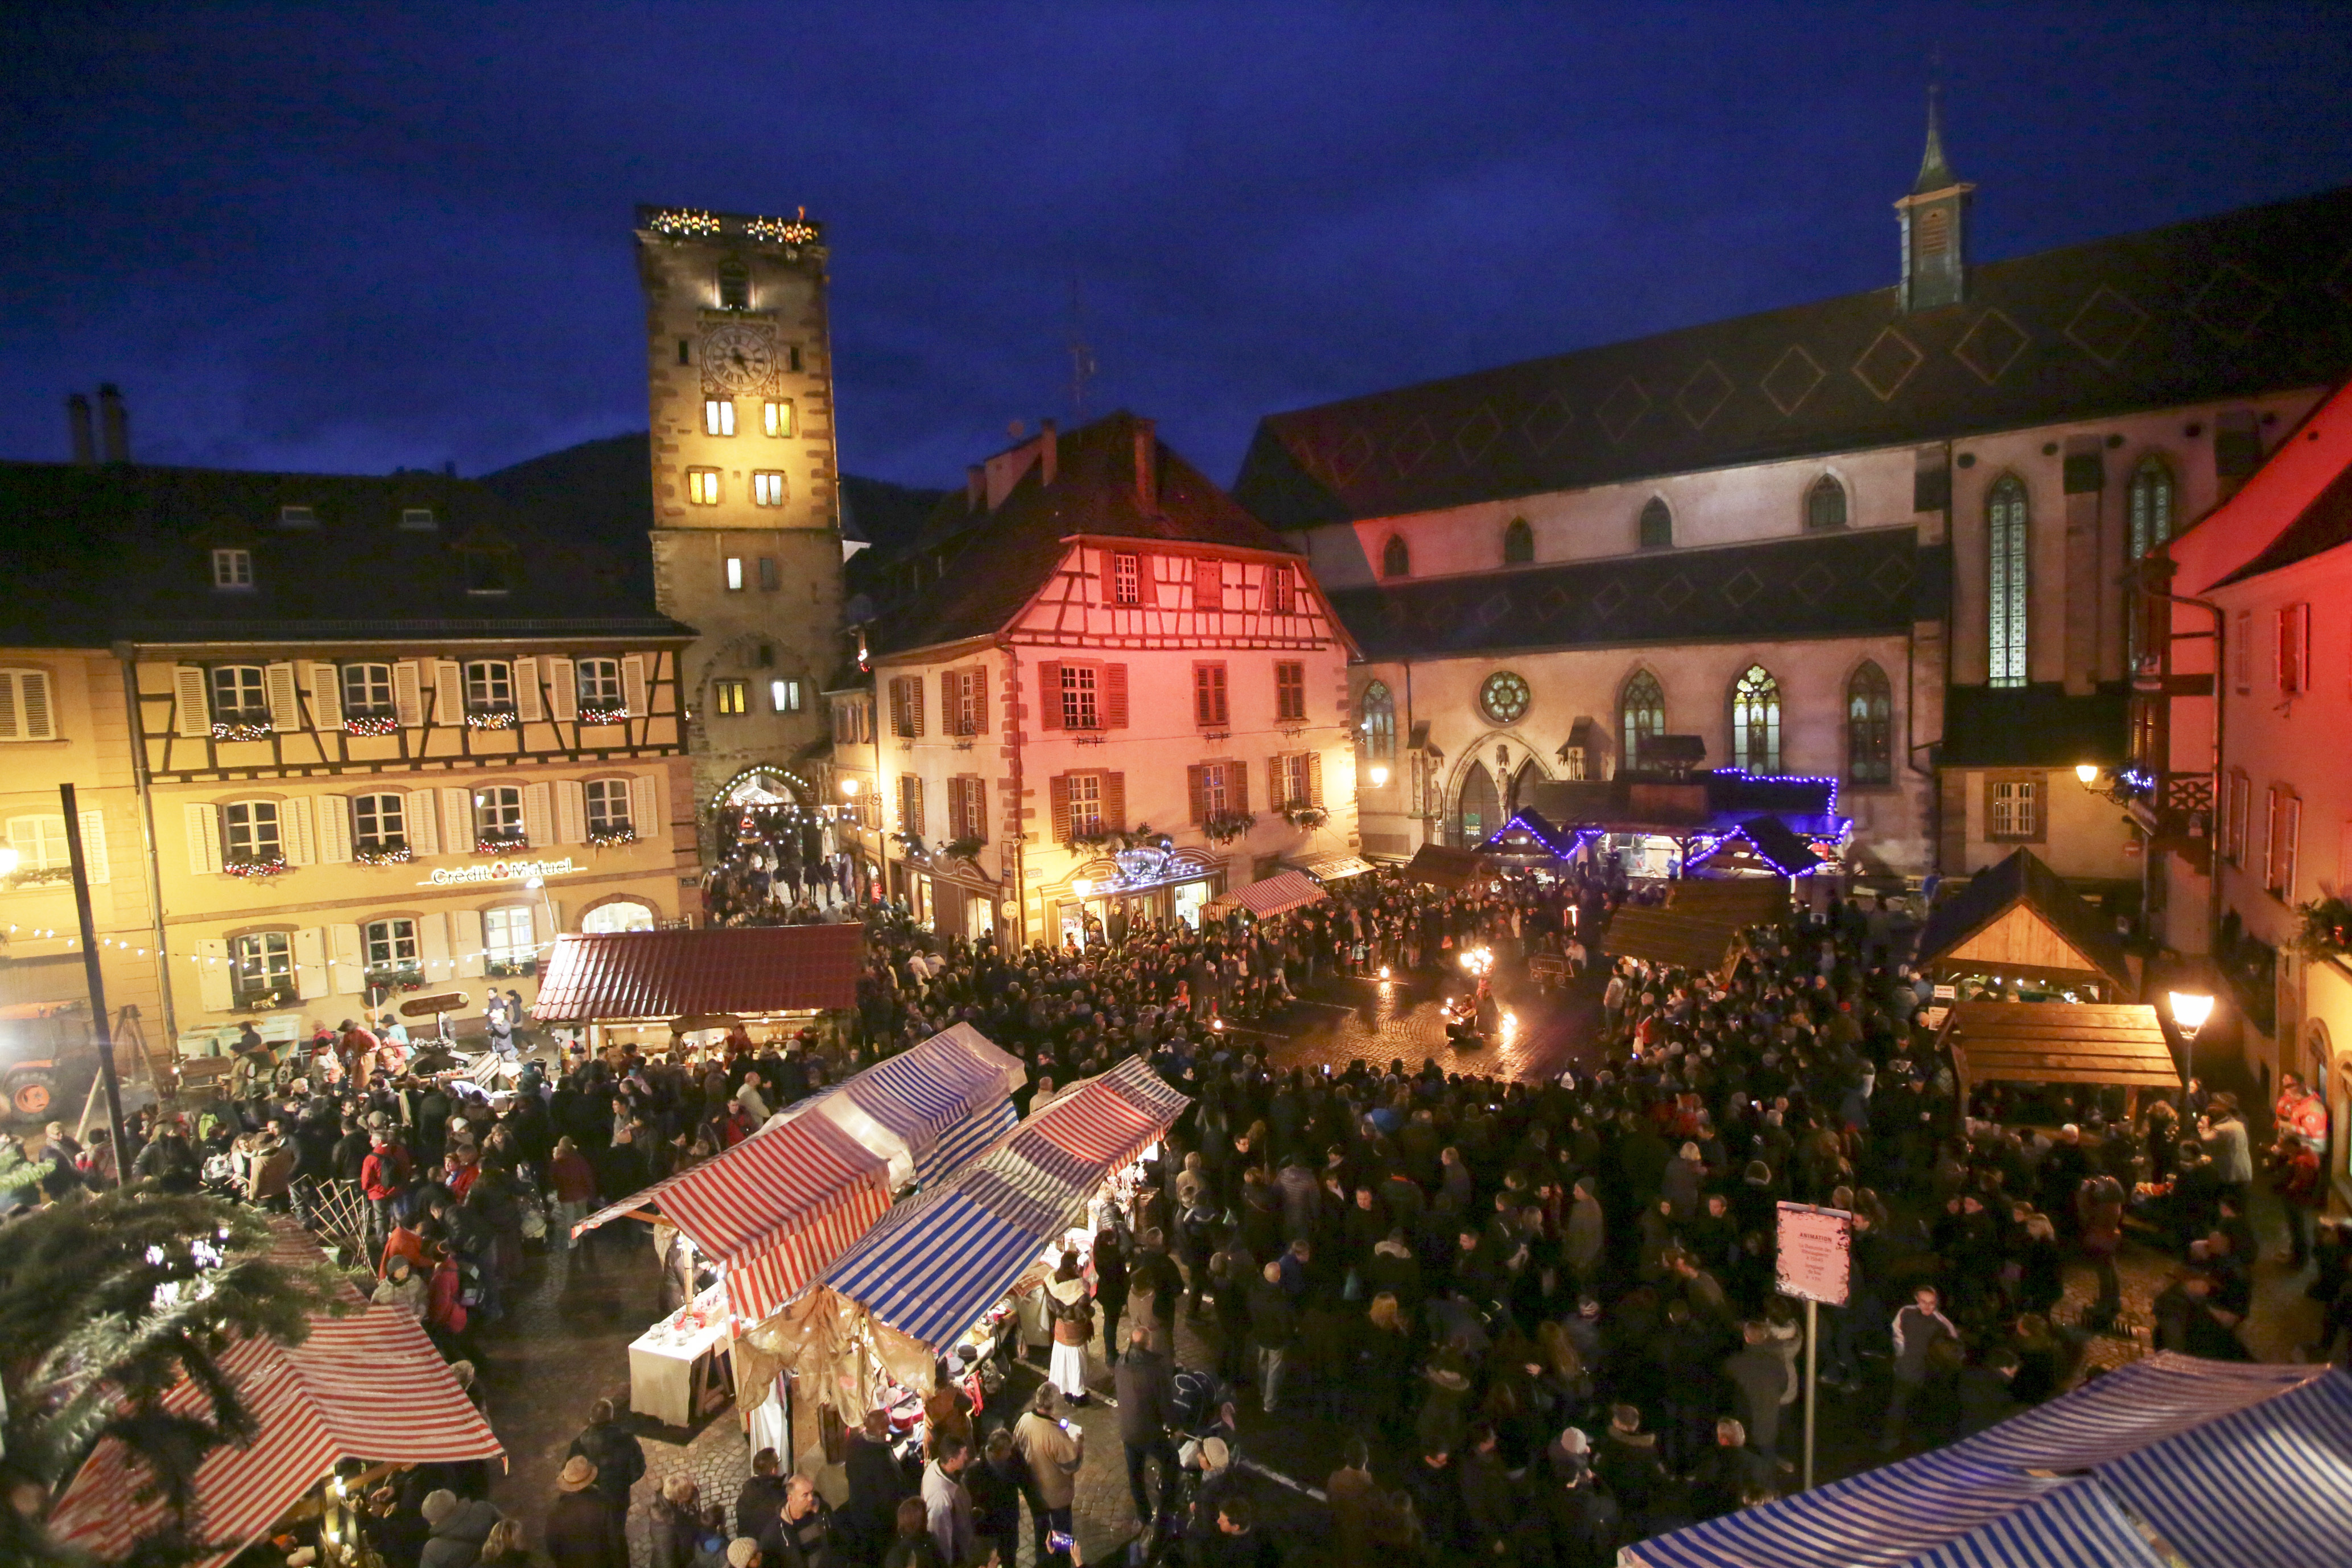 Le marché de Noël de Ribeauvillé en Alsace